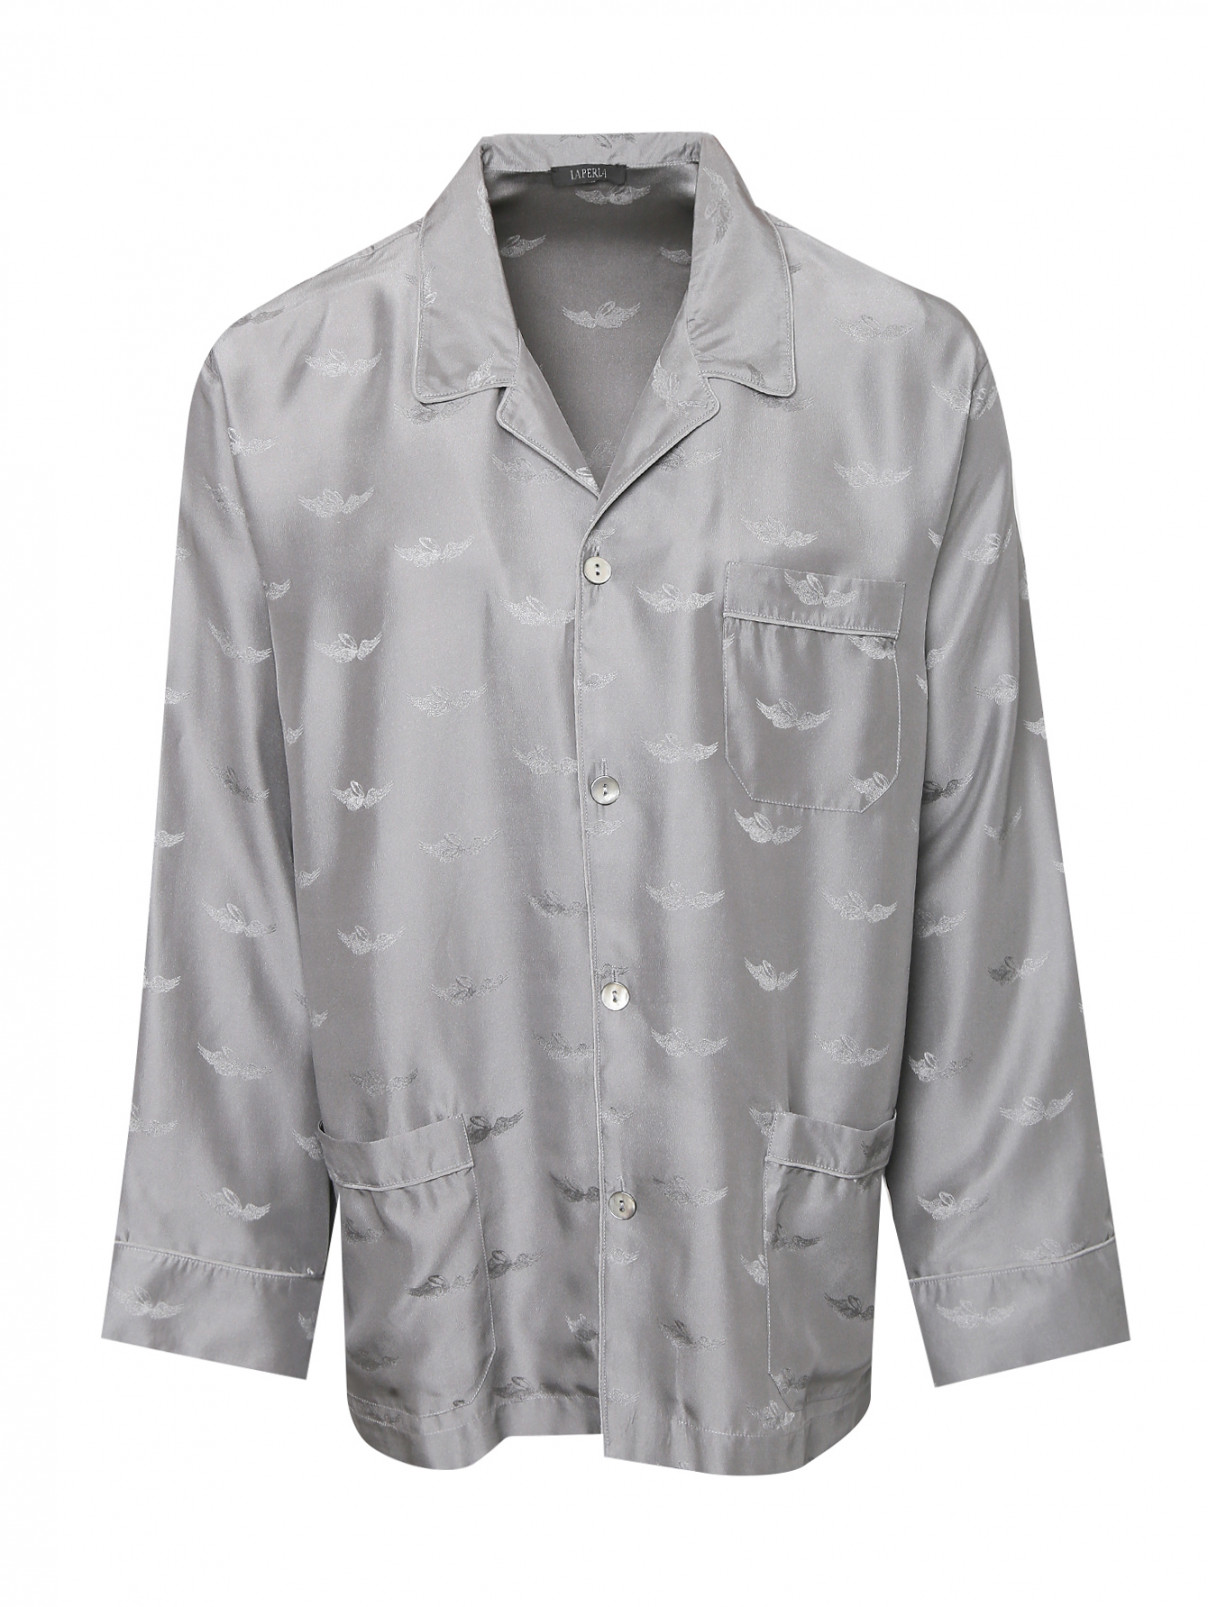 Рубашка из шелка с узором Nero Perla  –  Общий вид  – Цвет:  Серый